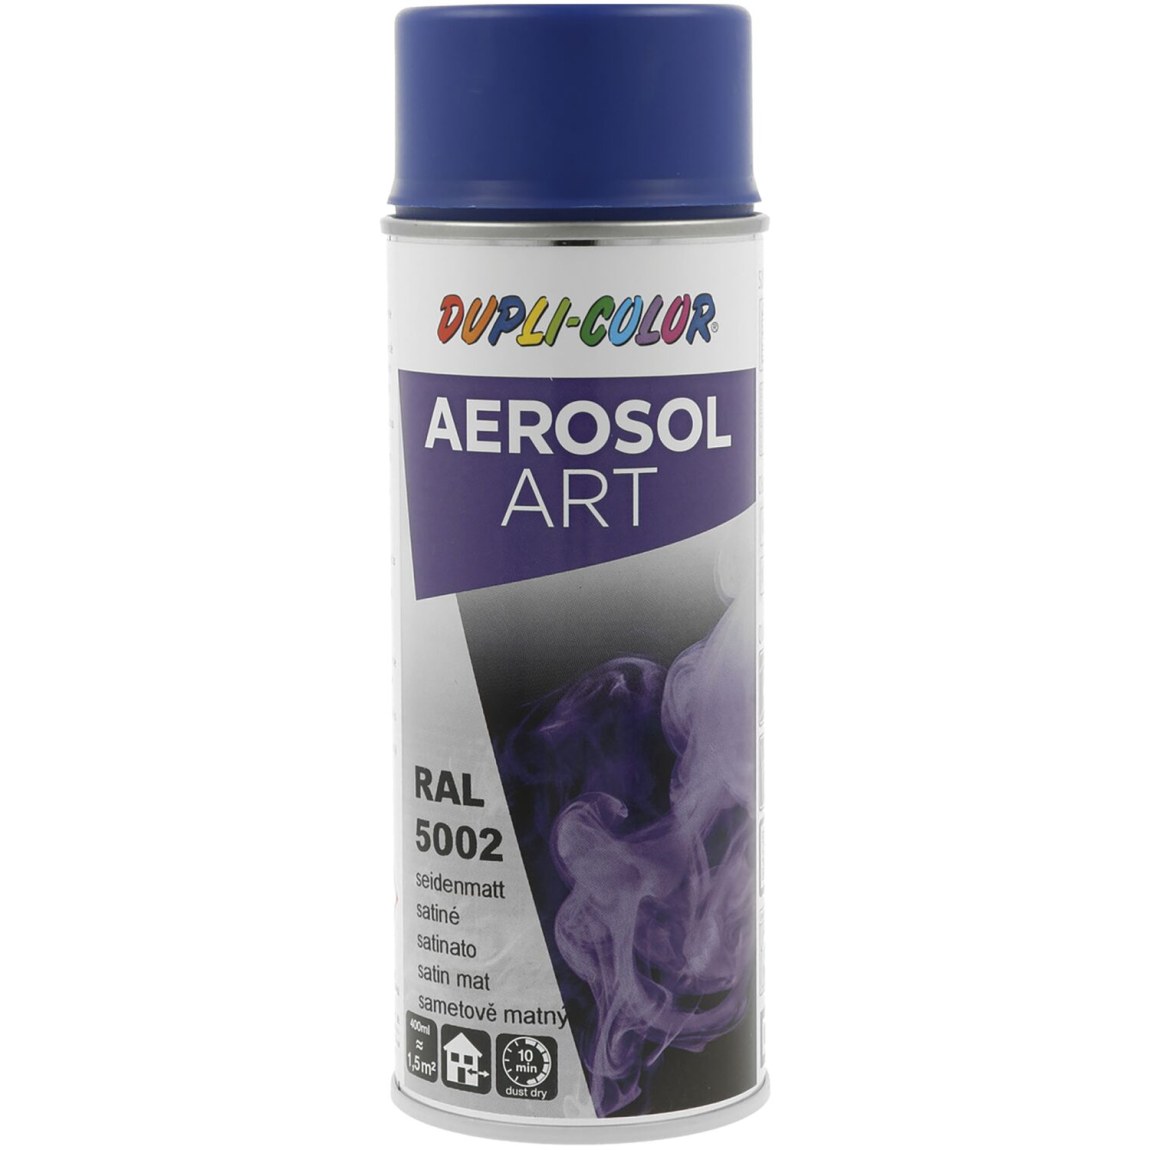 Dupli-Color Aerosol Art sprej 400 ml ultramarínová hedv.mat / RAL 5002 - Železářství Chemicko-technické výrobky Technické aerosoly Lak ve Spreji